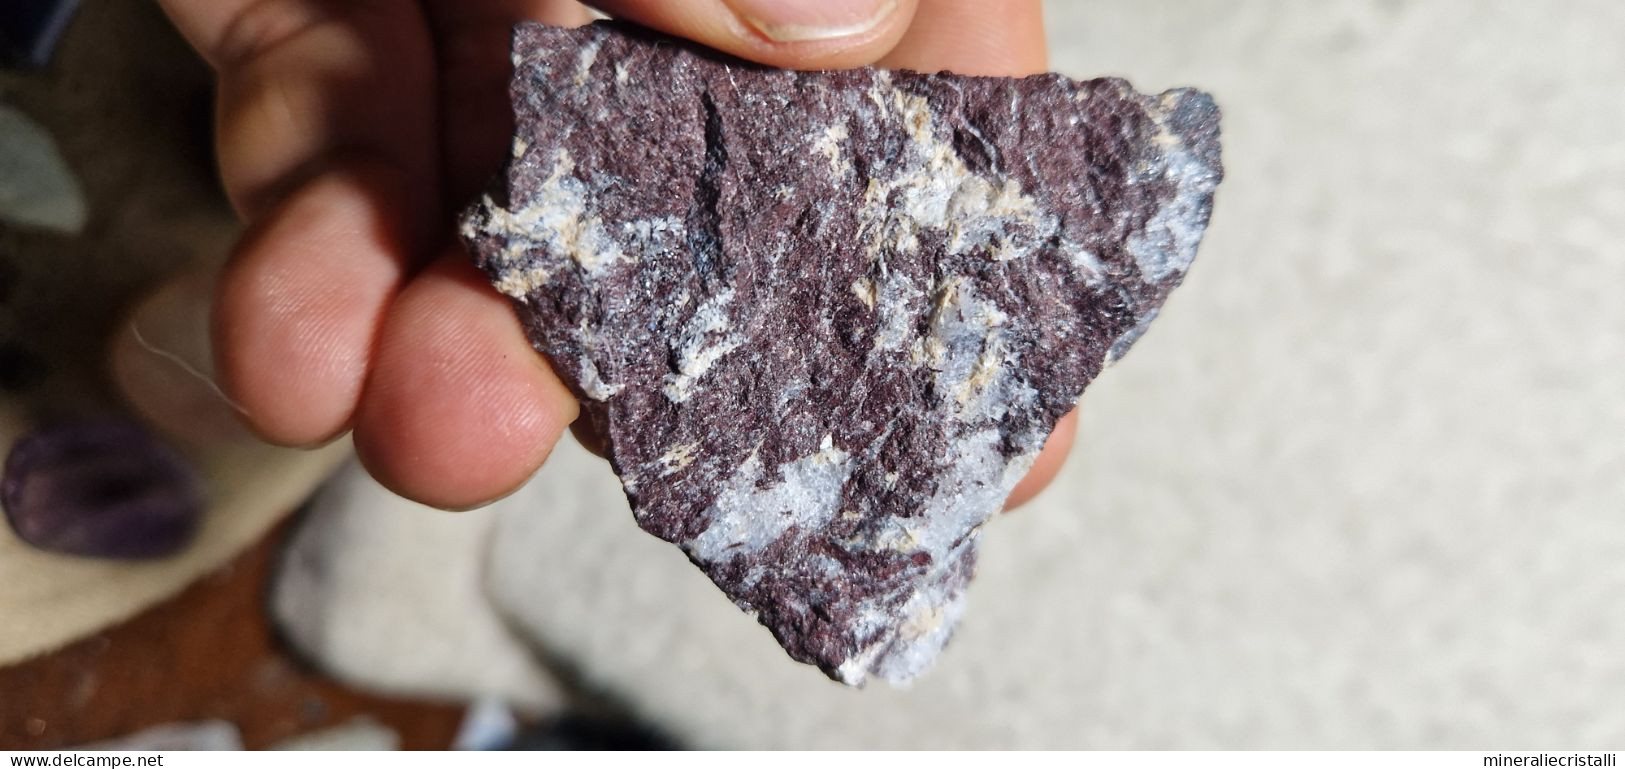 Piemontite Tremolite 42,73 Gr San Marcel Valle D'Aosta Italia - Minerals